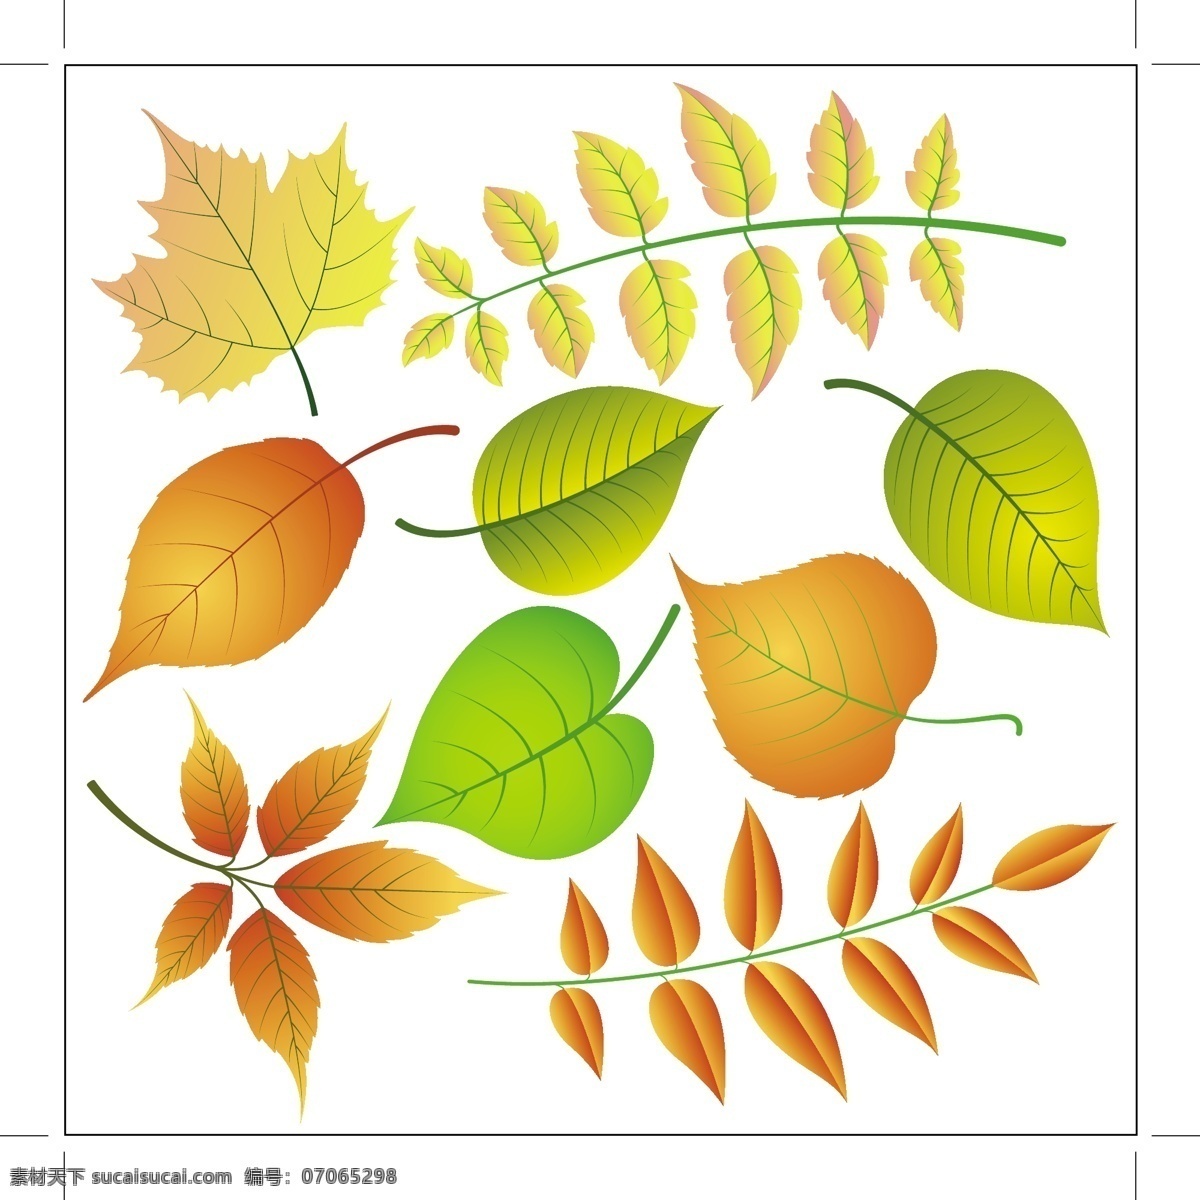 漂亮 树叶 橙色 环保 绿叶 矢量素材 叶子 矢量图 其他矢量图